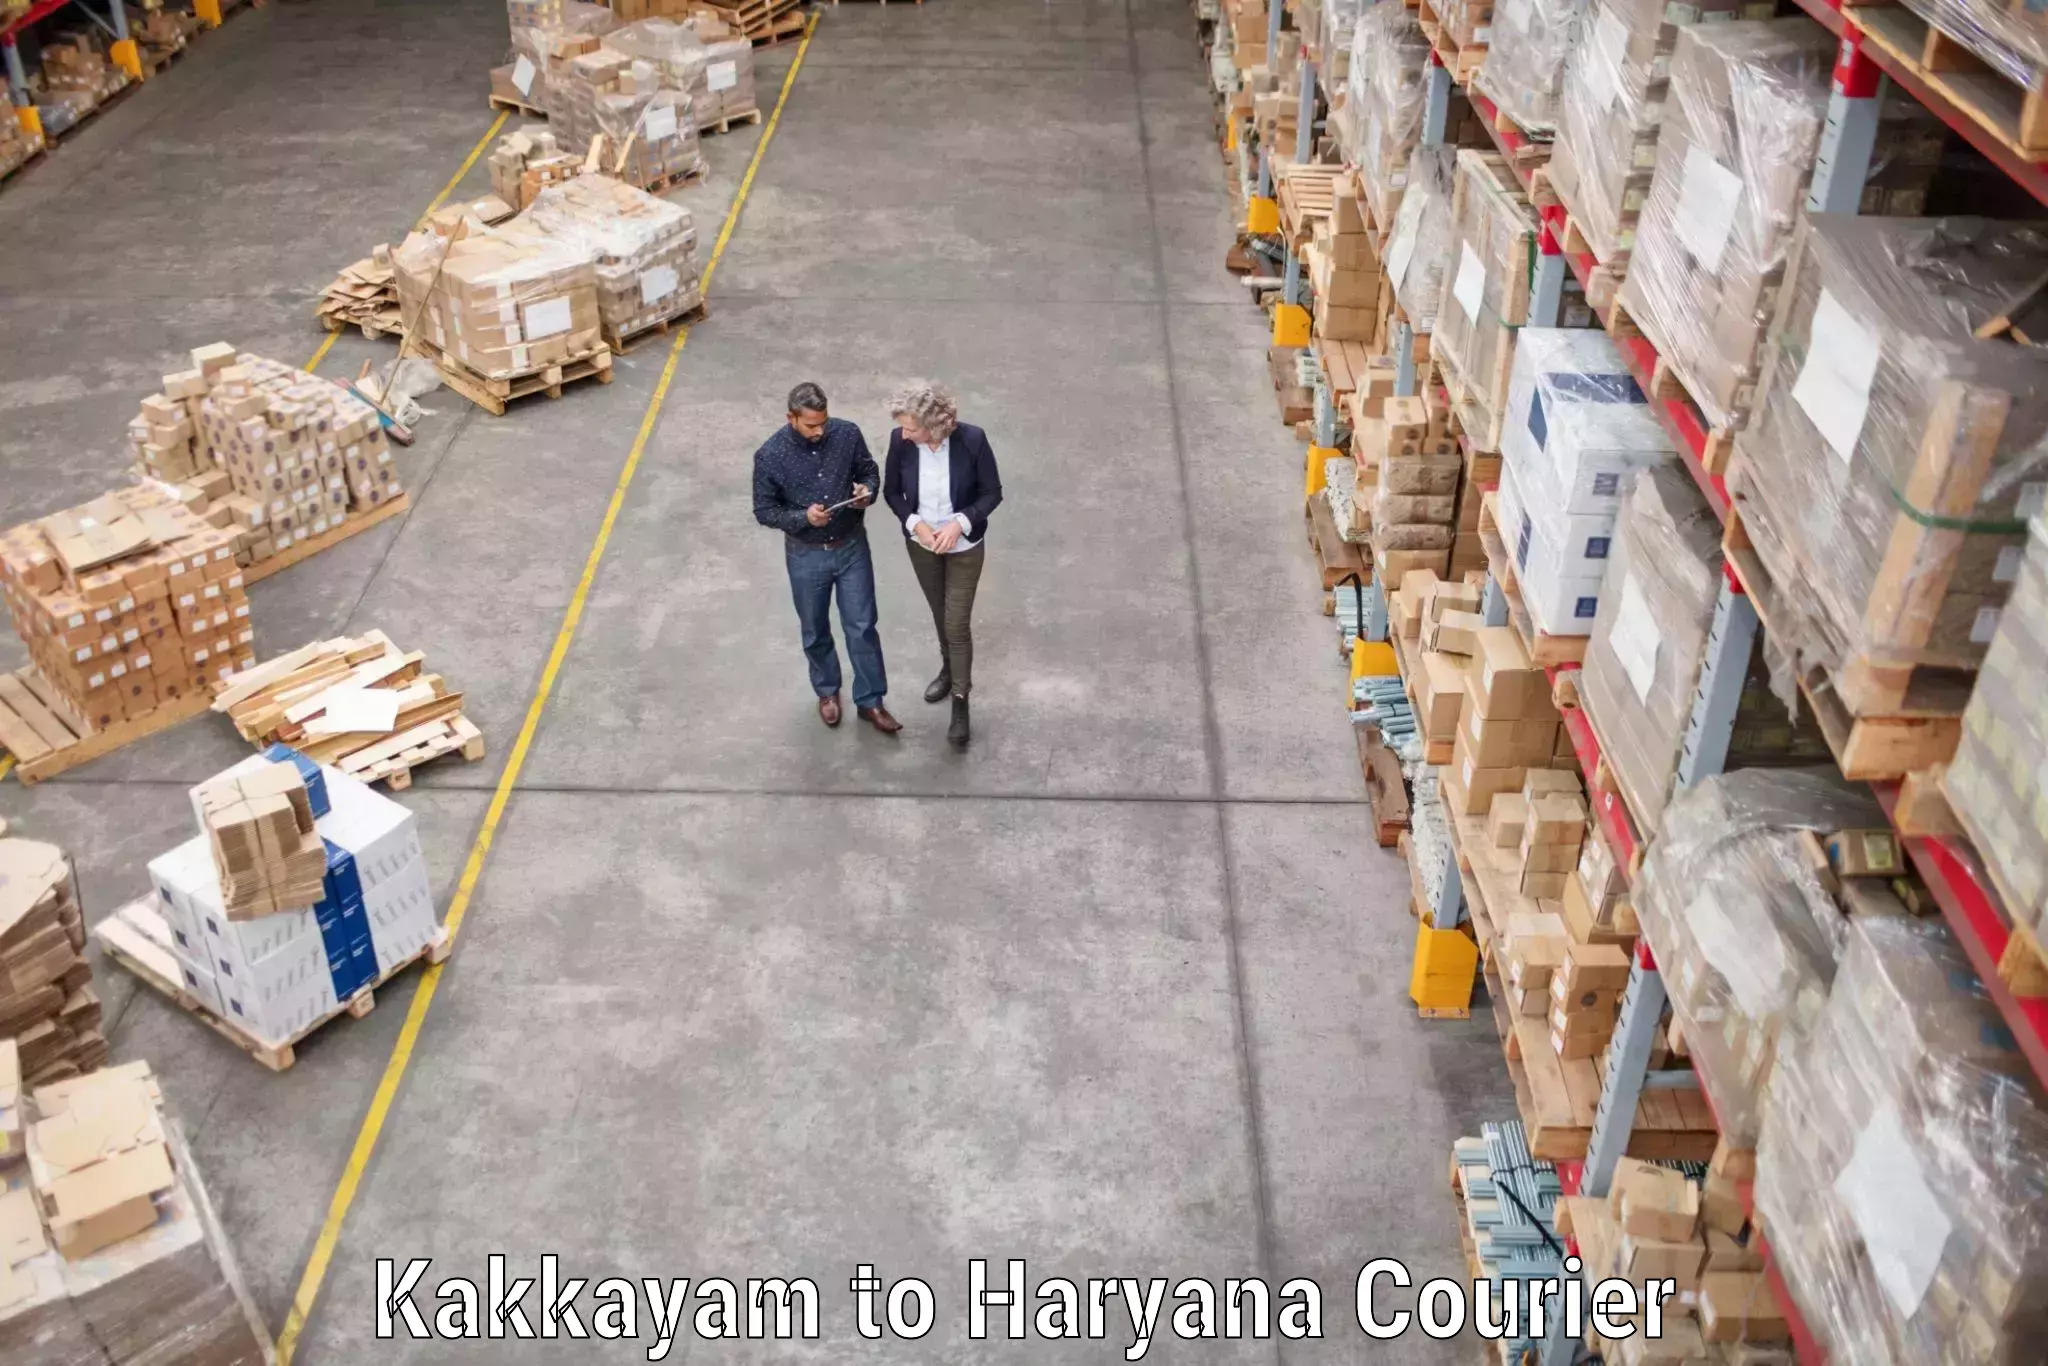 Skilled furniture transporters Kakkayam to Odhan